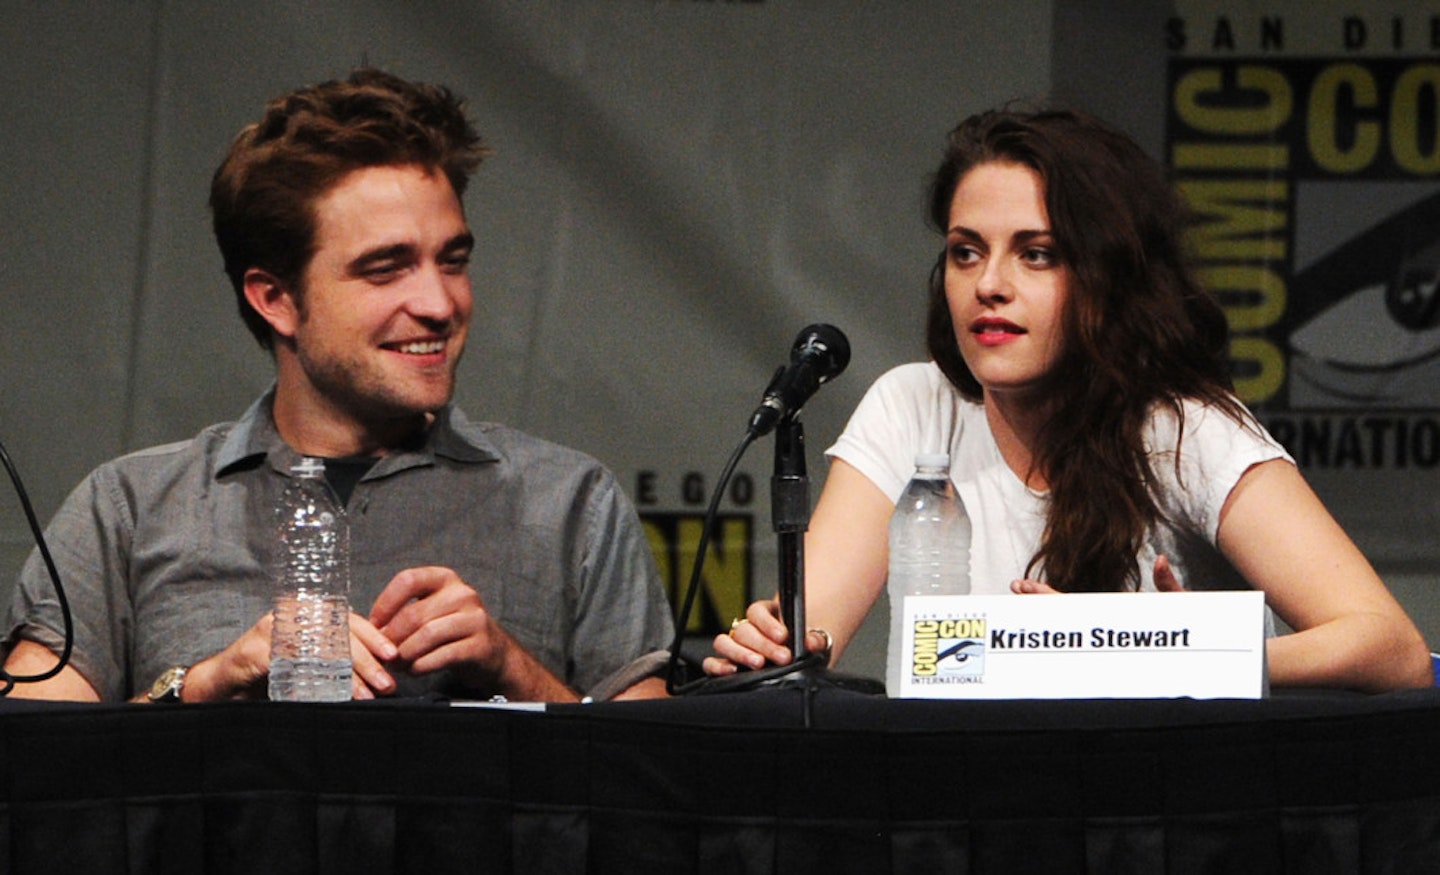 Twilight stars Robert Pattinson and Kristen Stewart in 2012 [Getty]